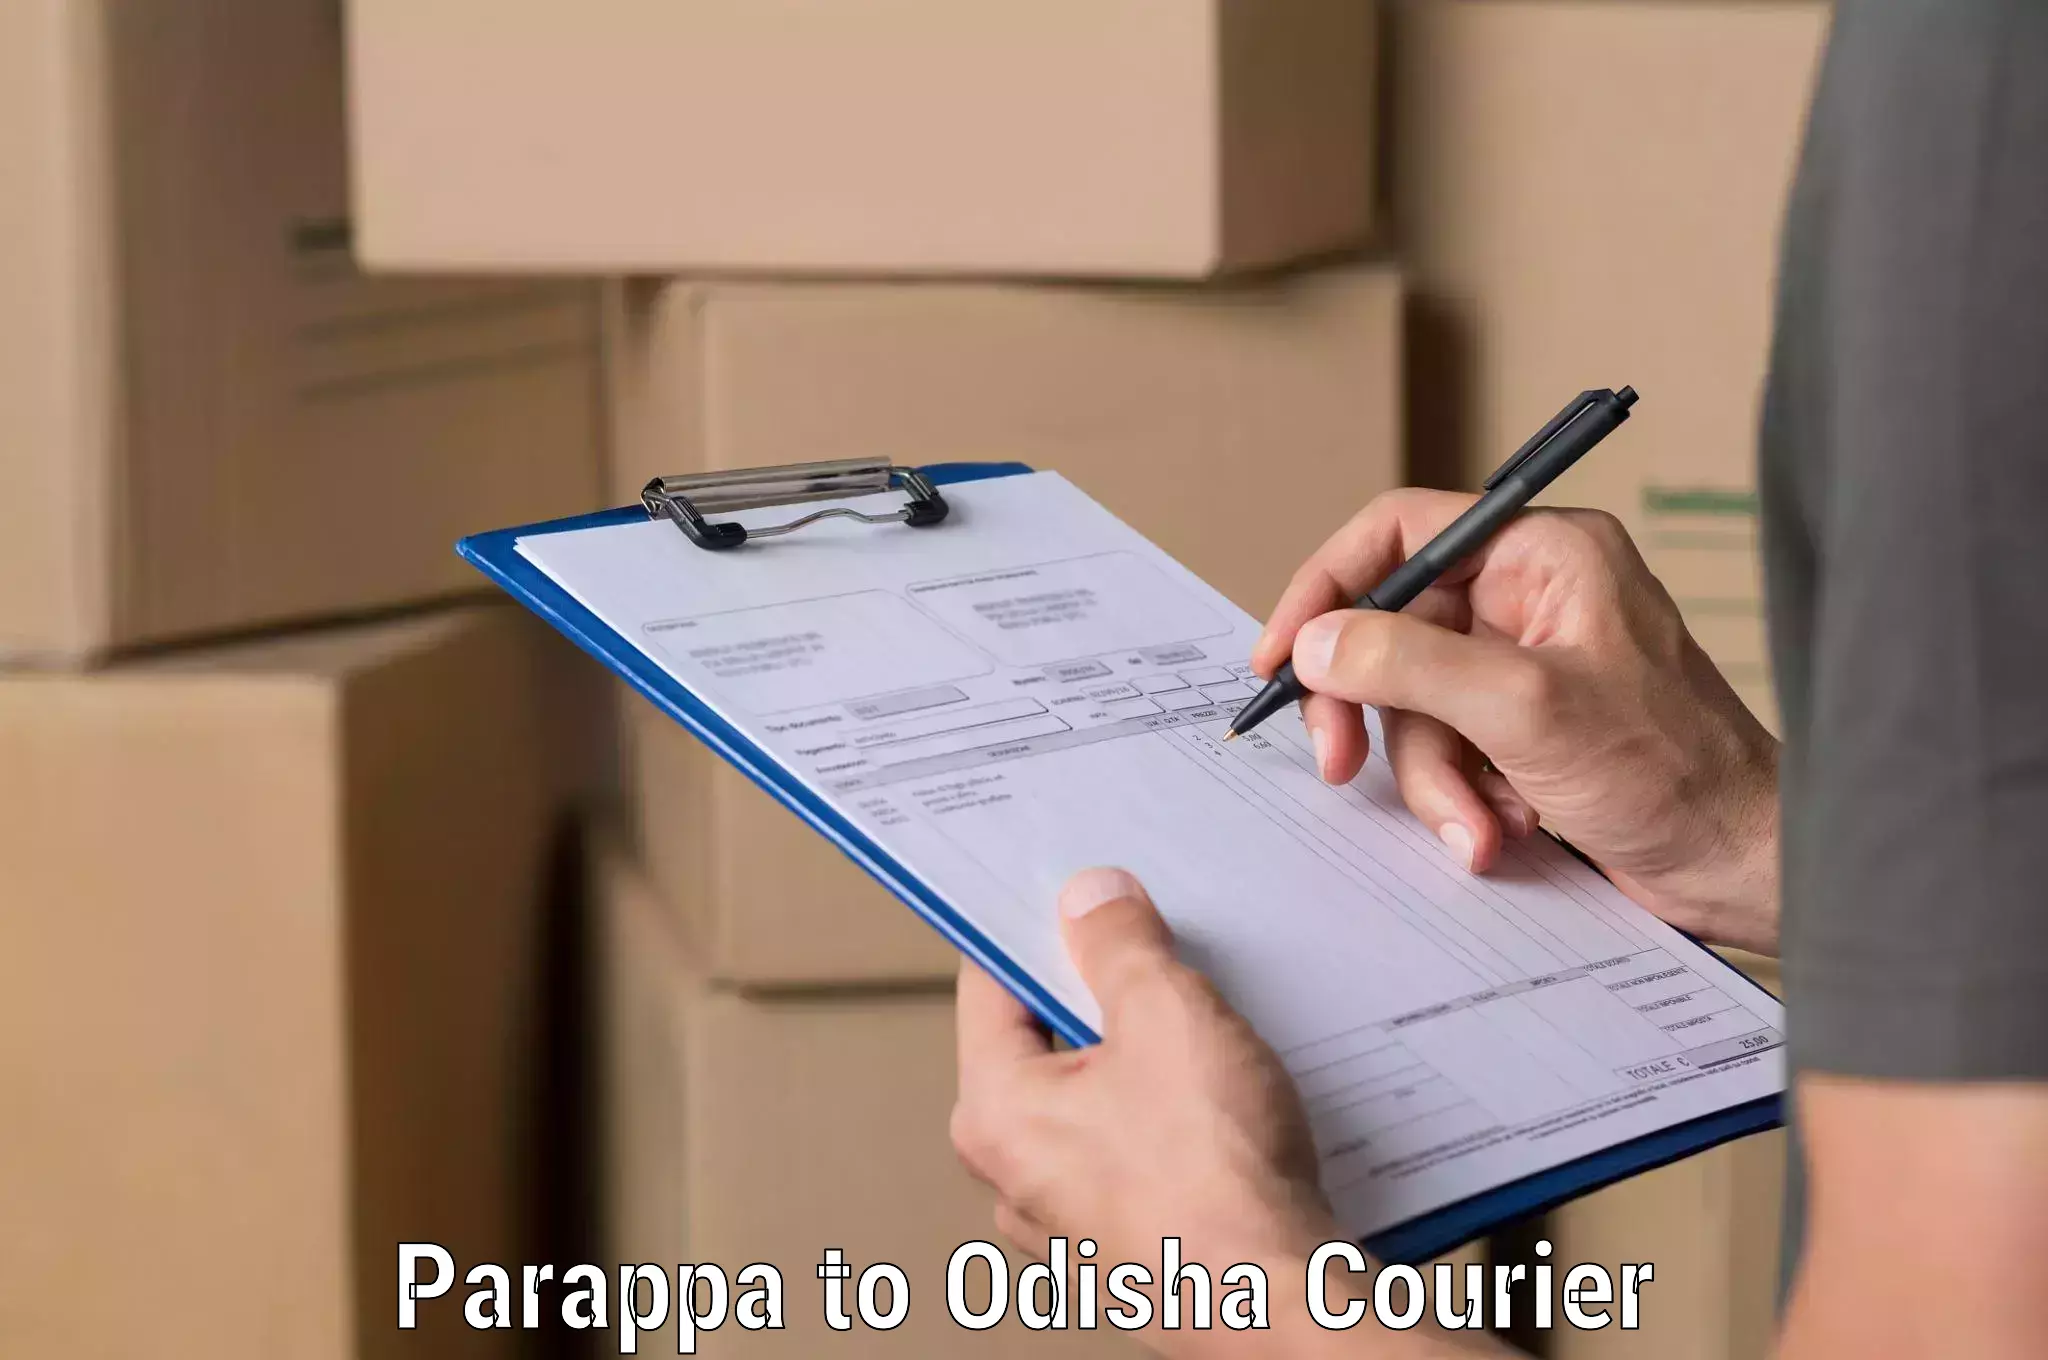 Cargo delivery service Parappa to Kishorenagar